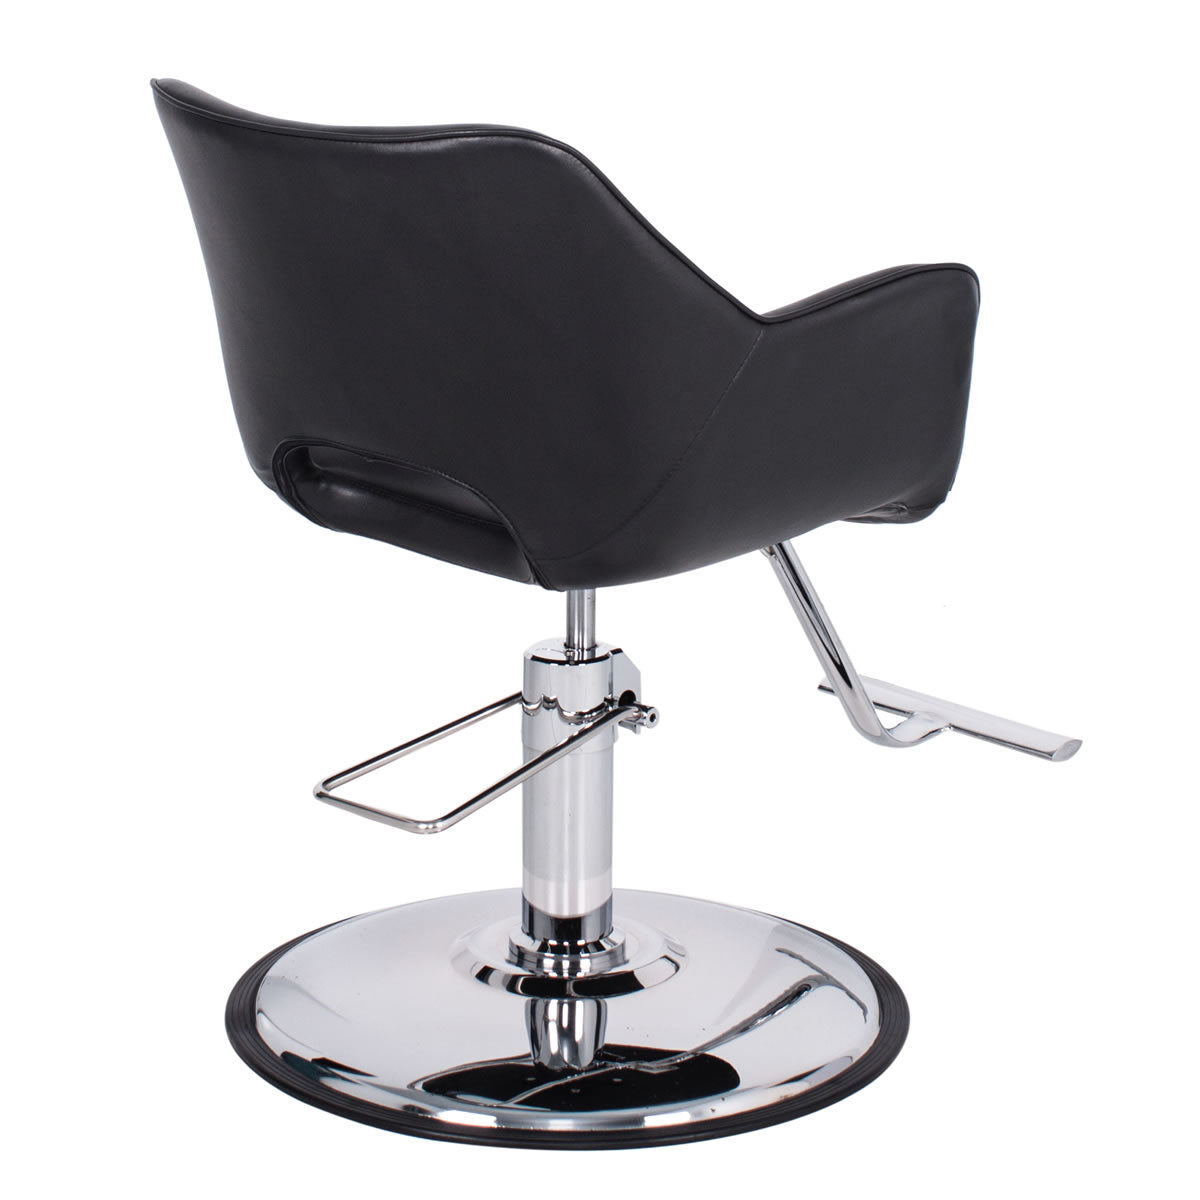 AMALFI Salon Styling Chair